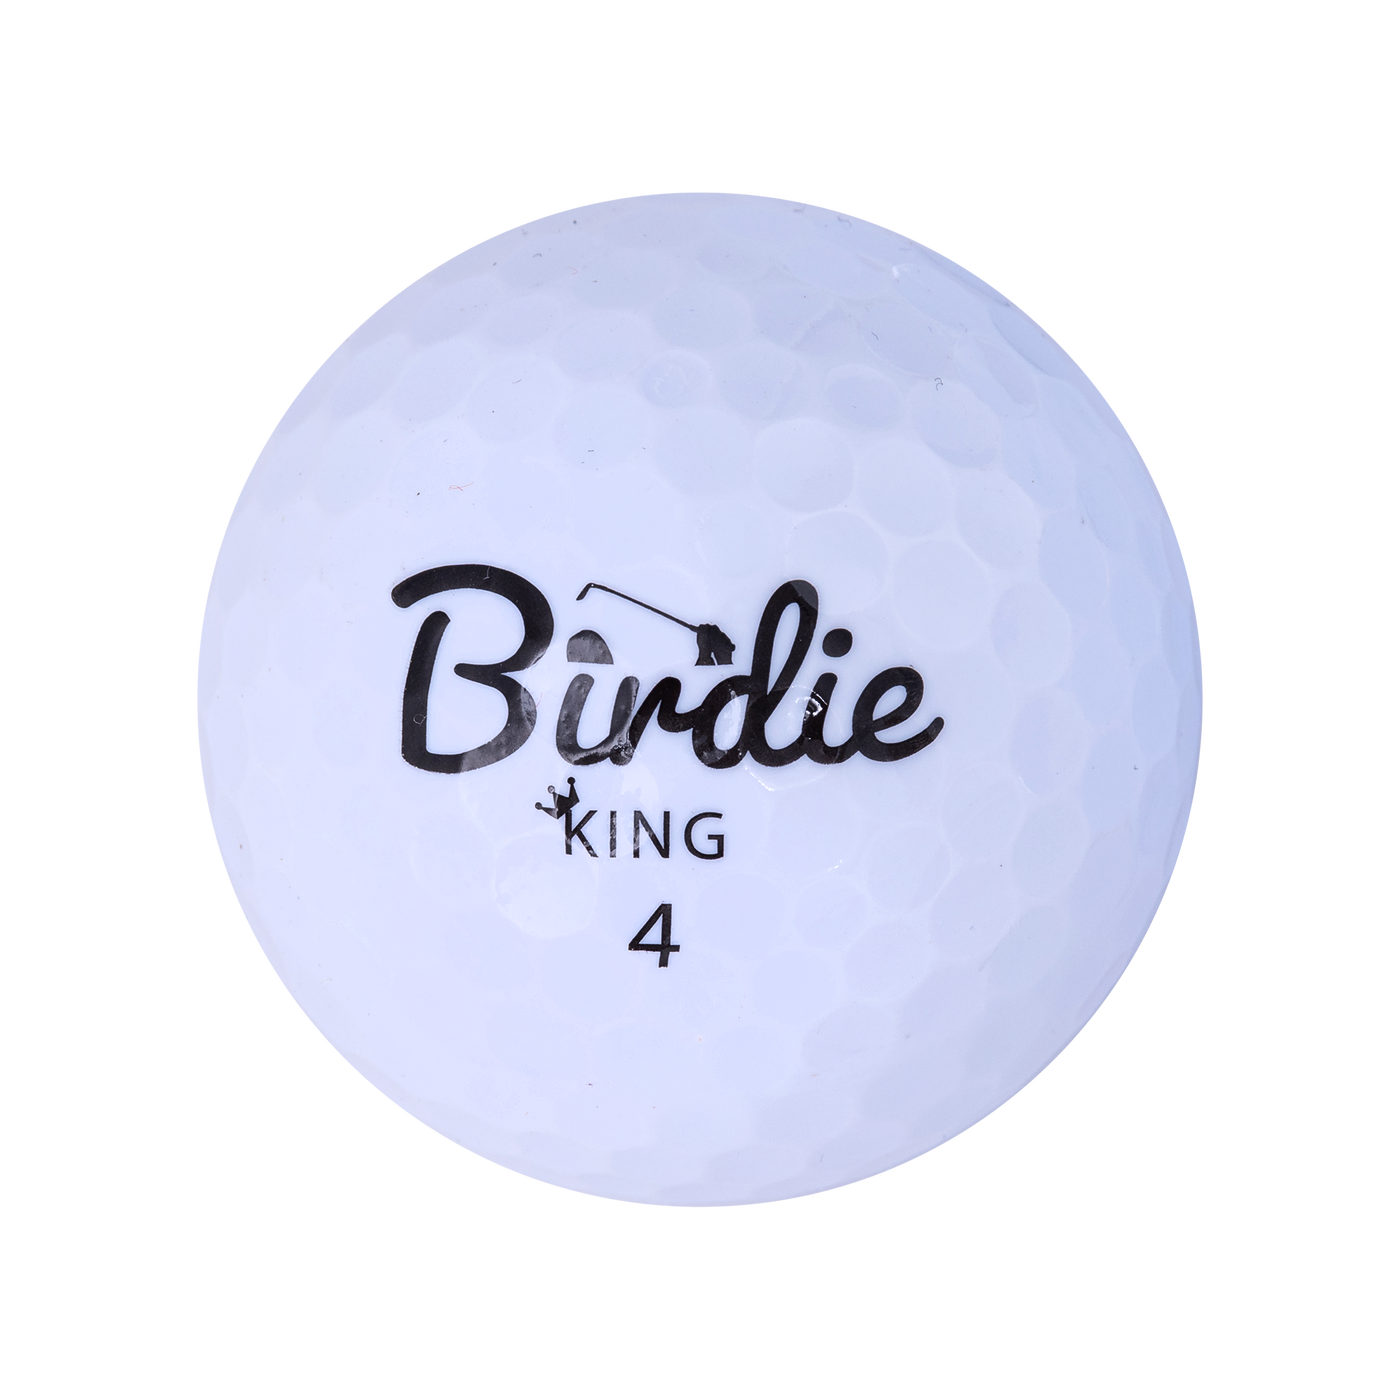 Birdie King Golf Balls